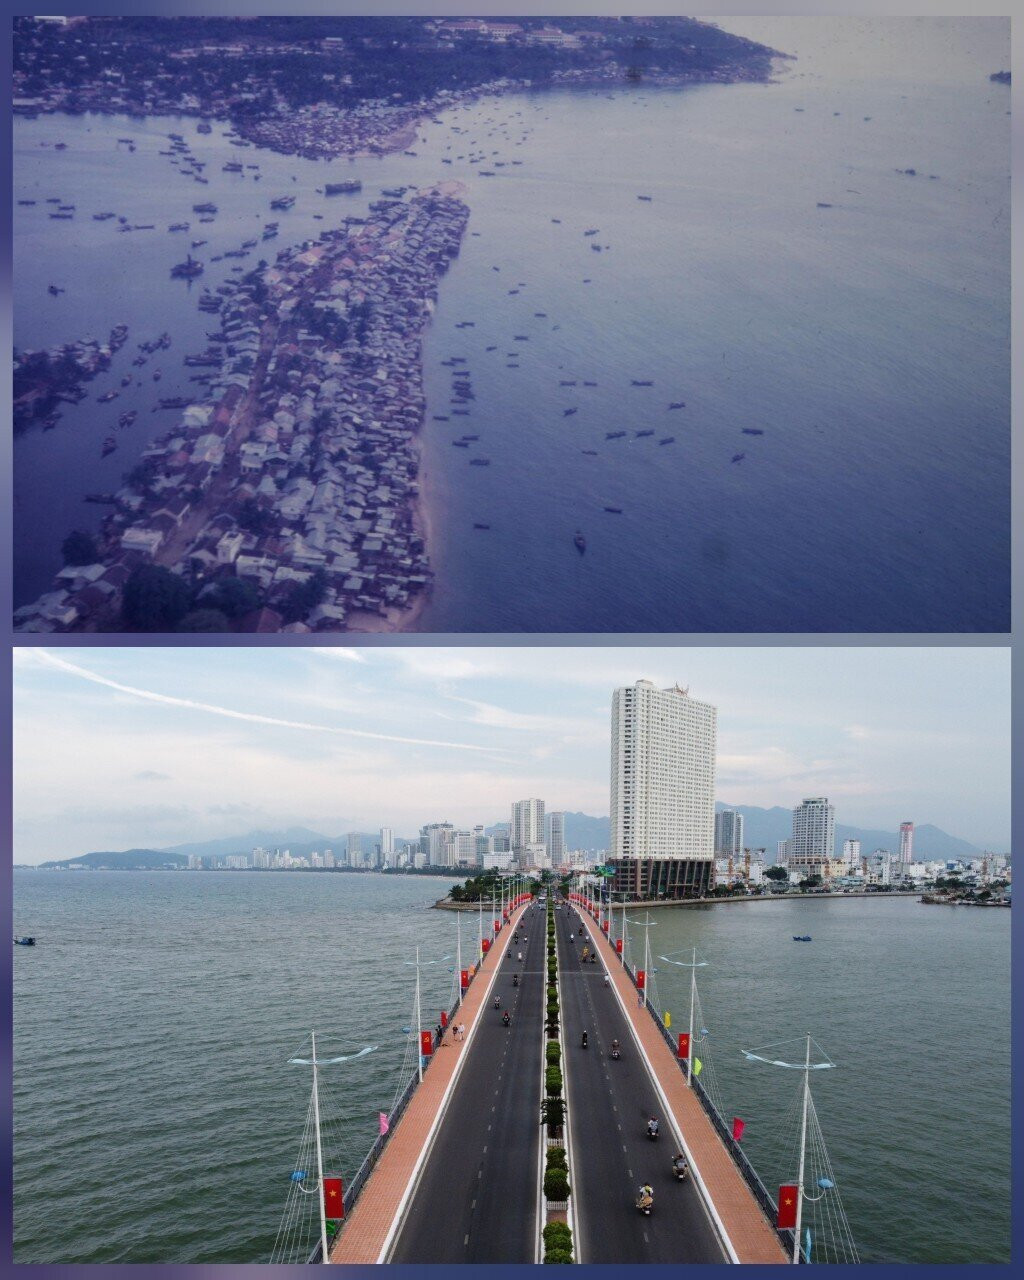 Xóm Cồn những năm 1968, khu vực ven biển Nha Trang (ảnh trên), nay có cây cầu Trần Phú - điểm nhấn trên tuyến đường biển ở Nha Trang (ảnh dưới).